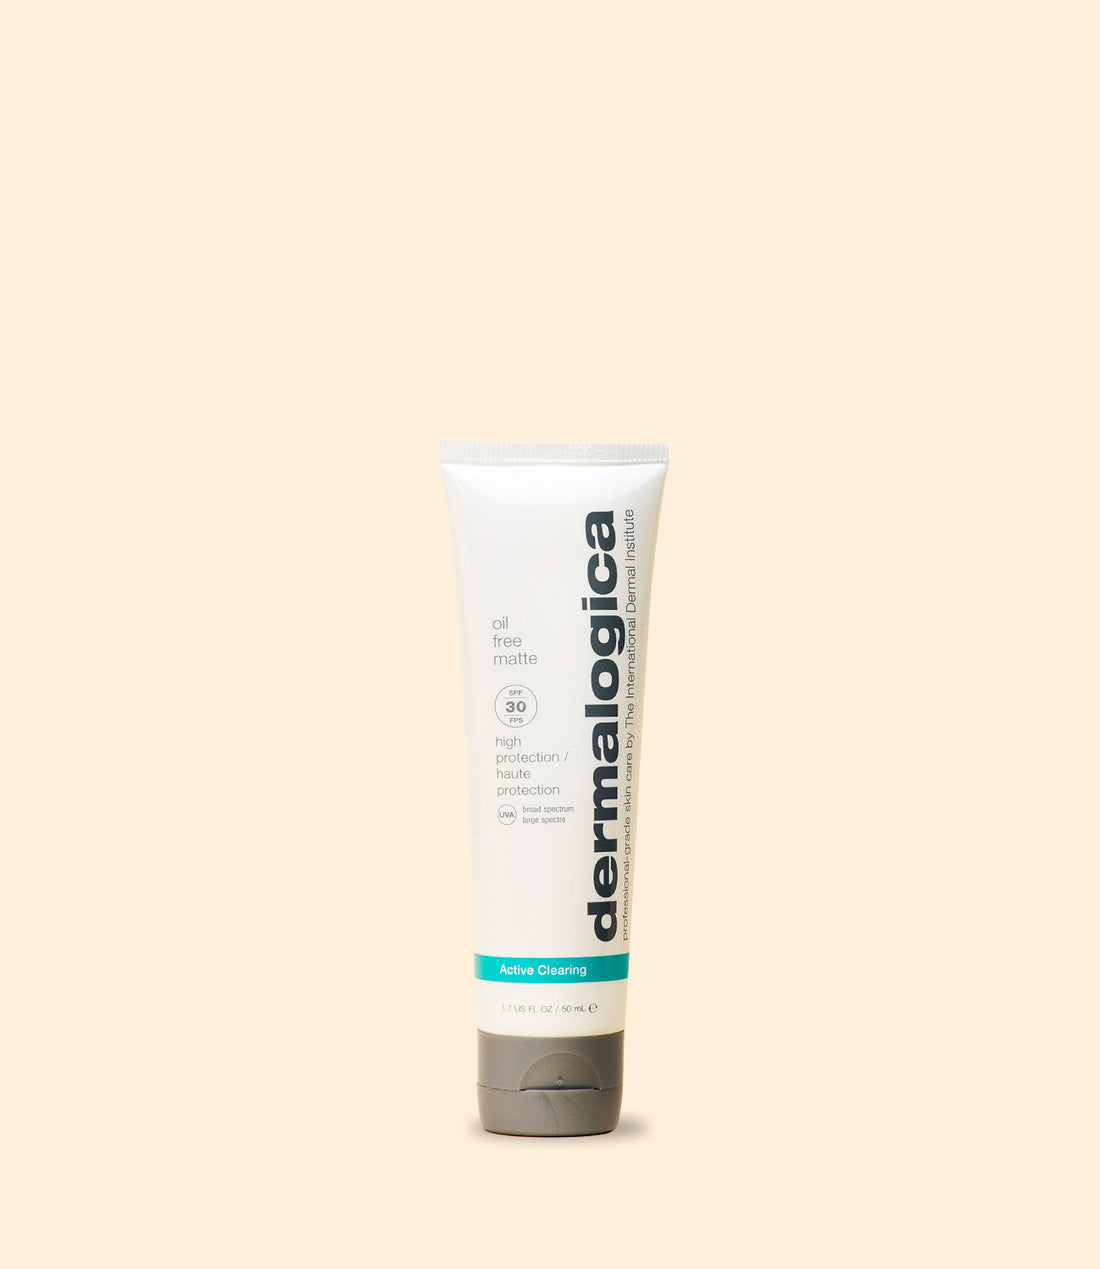 crème hydratante matifiante pour le visage Oil Free Matte SPF 30 de la gamme Active Clearing par Dermalogica 50 ml